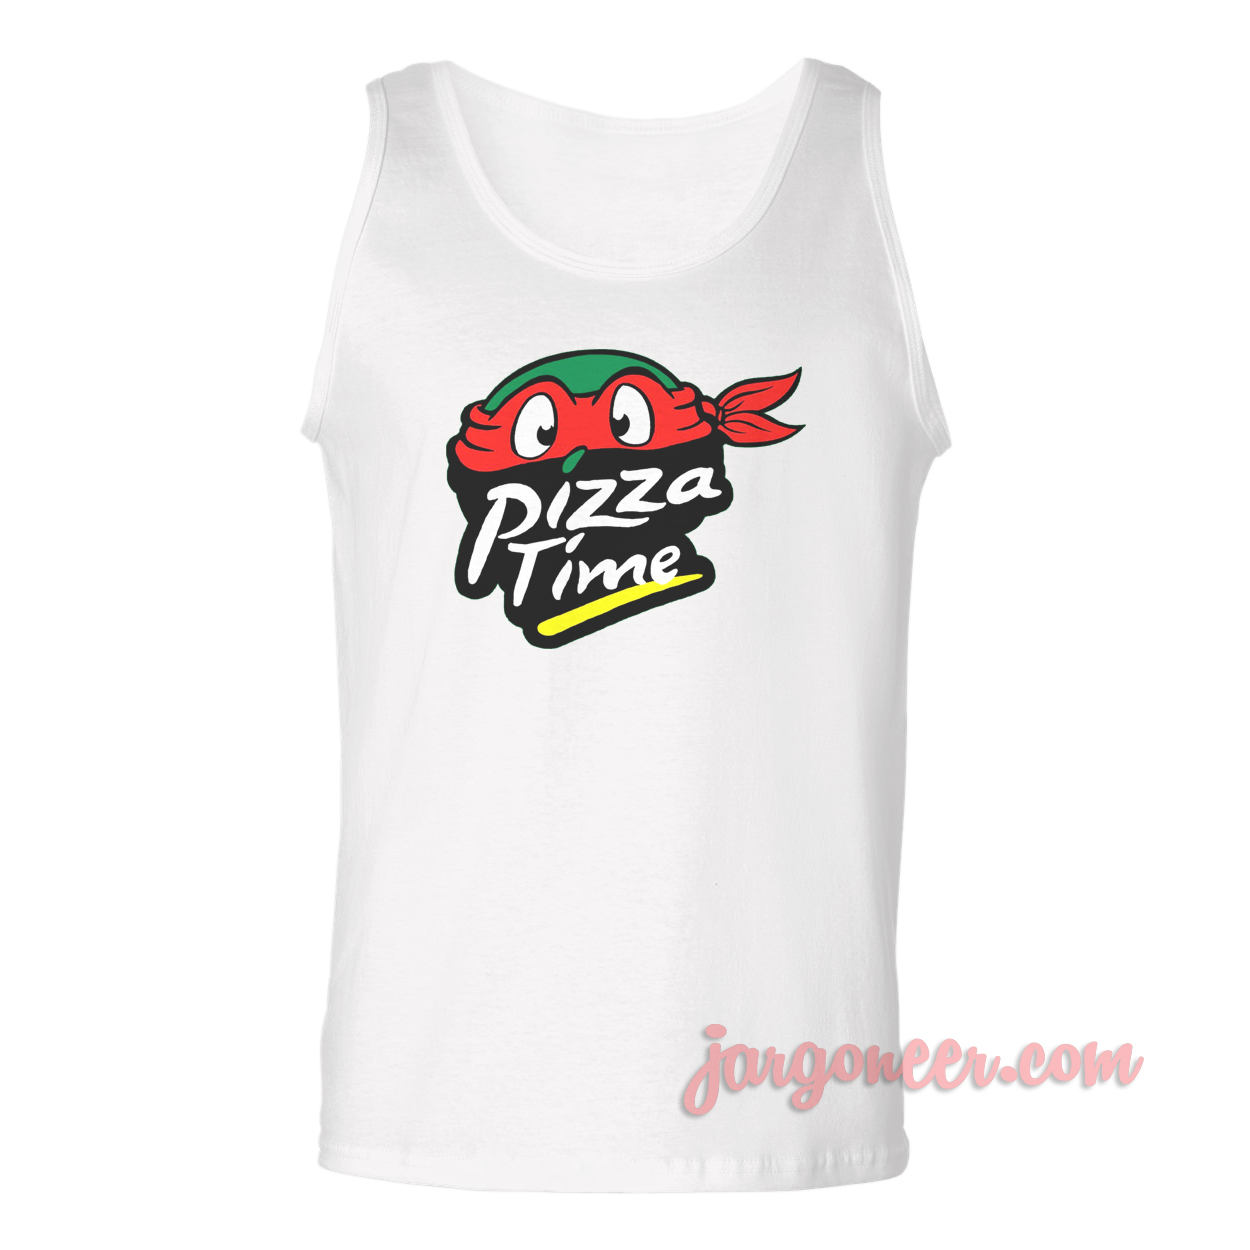 Pizza Time Turtle - Shop Unique Graphic Cool Shirt Designs